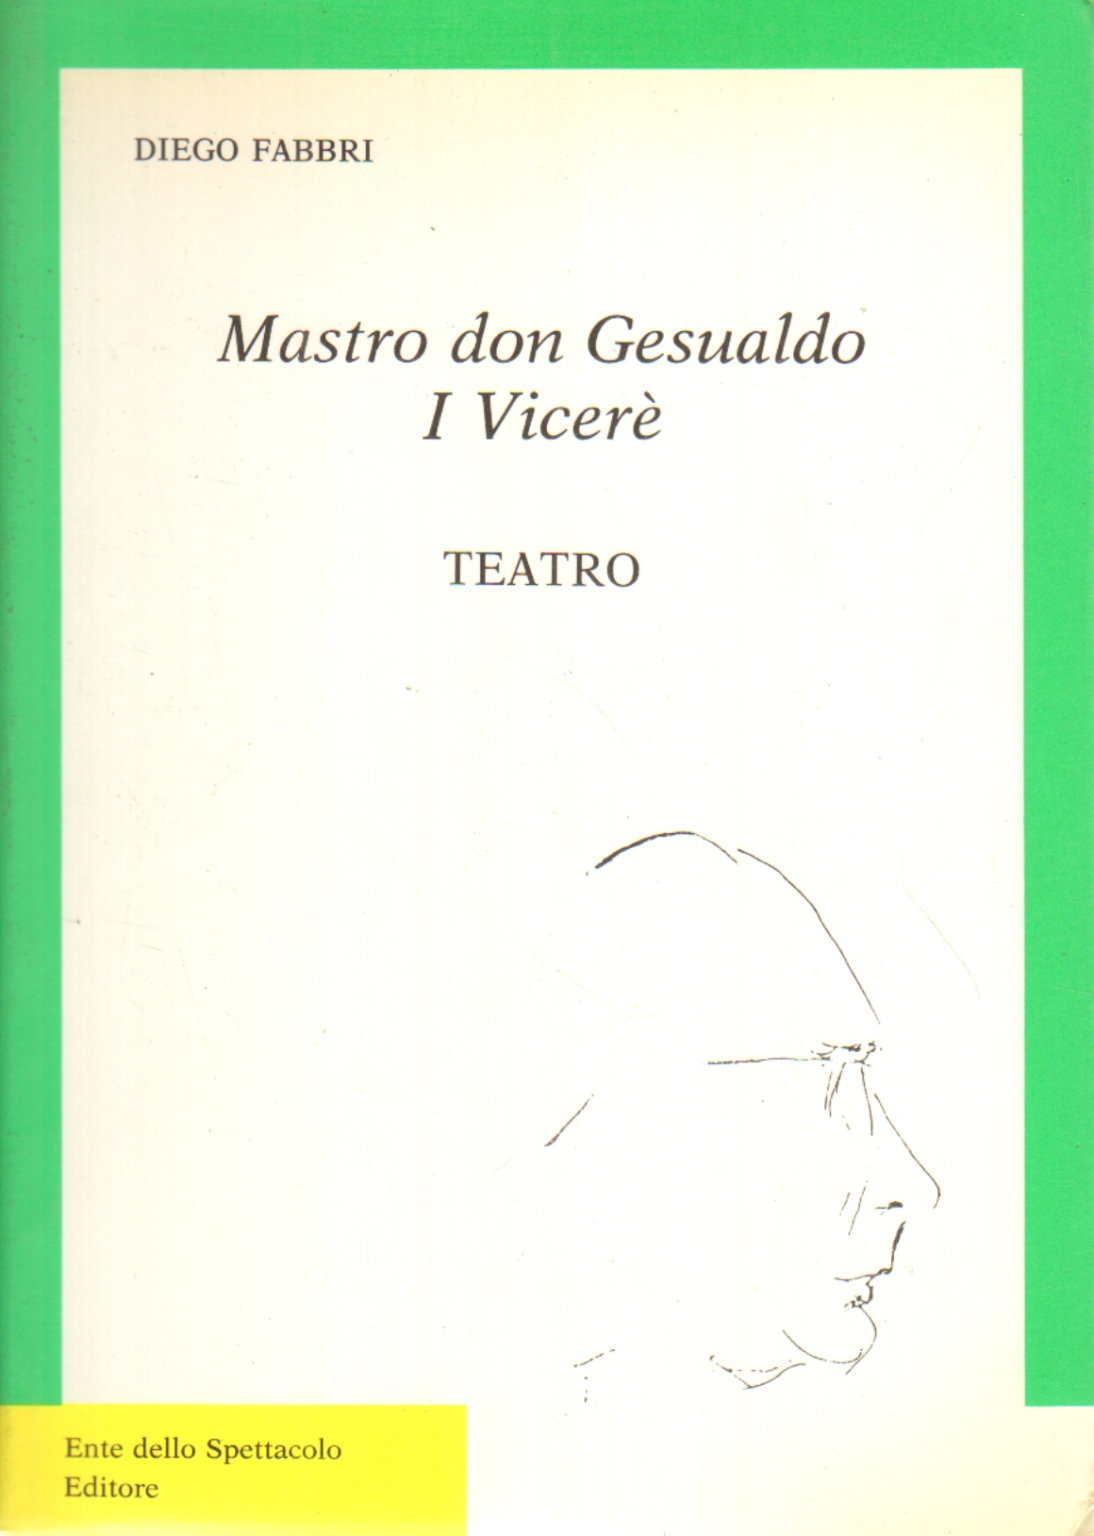 Mastro don Gesualdo. Der Vizekönig, Diego Fabbri